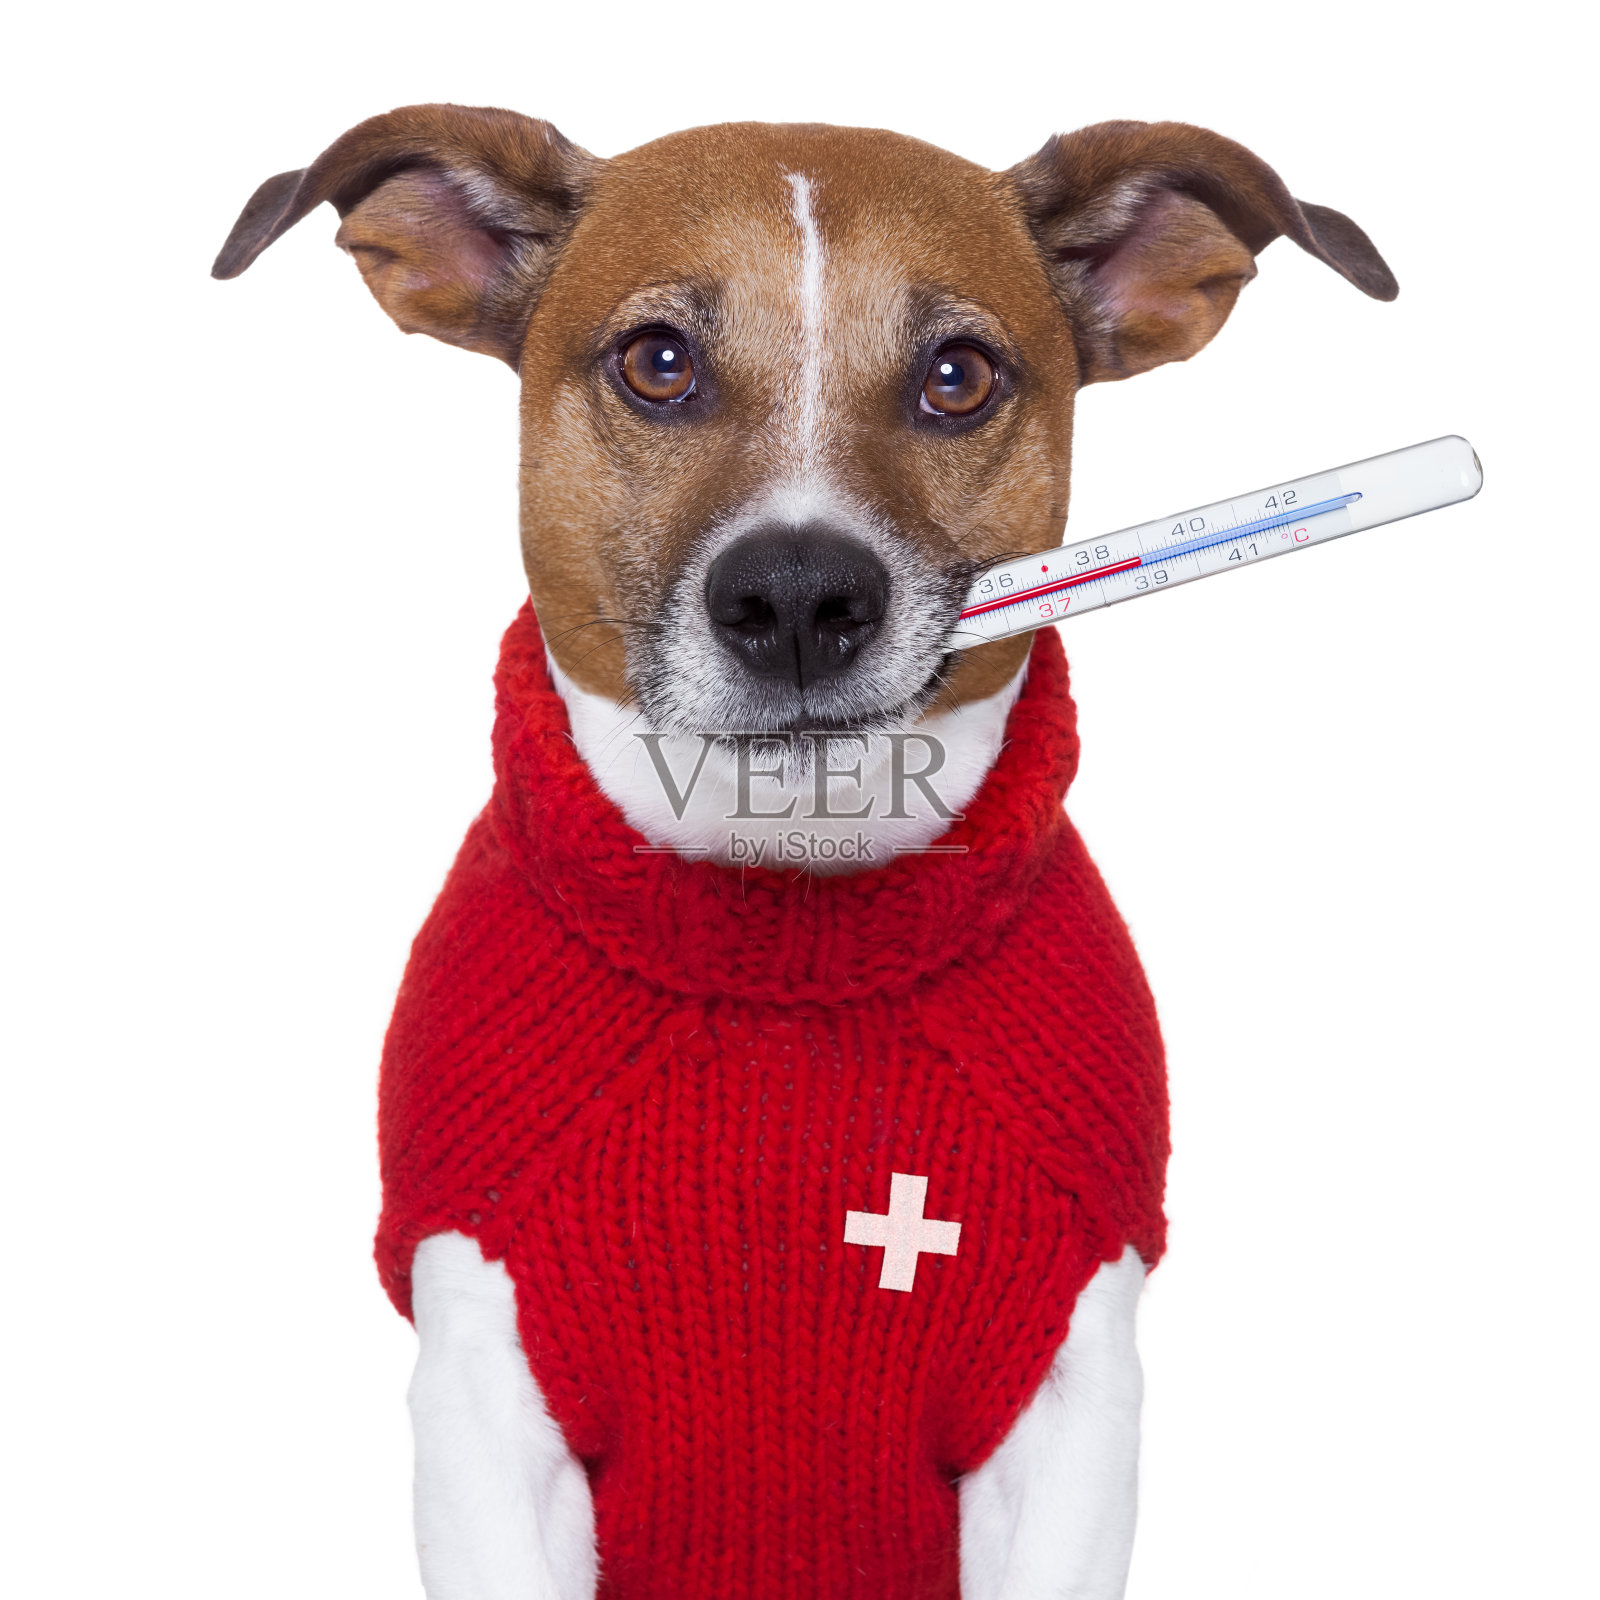 生病的狗穿着毛衣，嘴里挂着温度计照片摄影图片